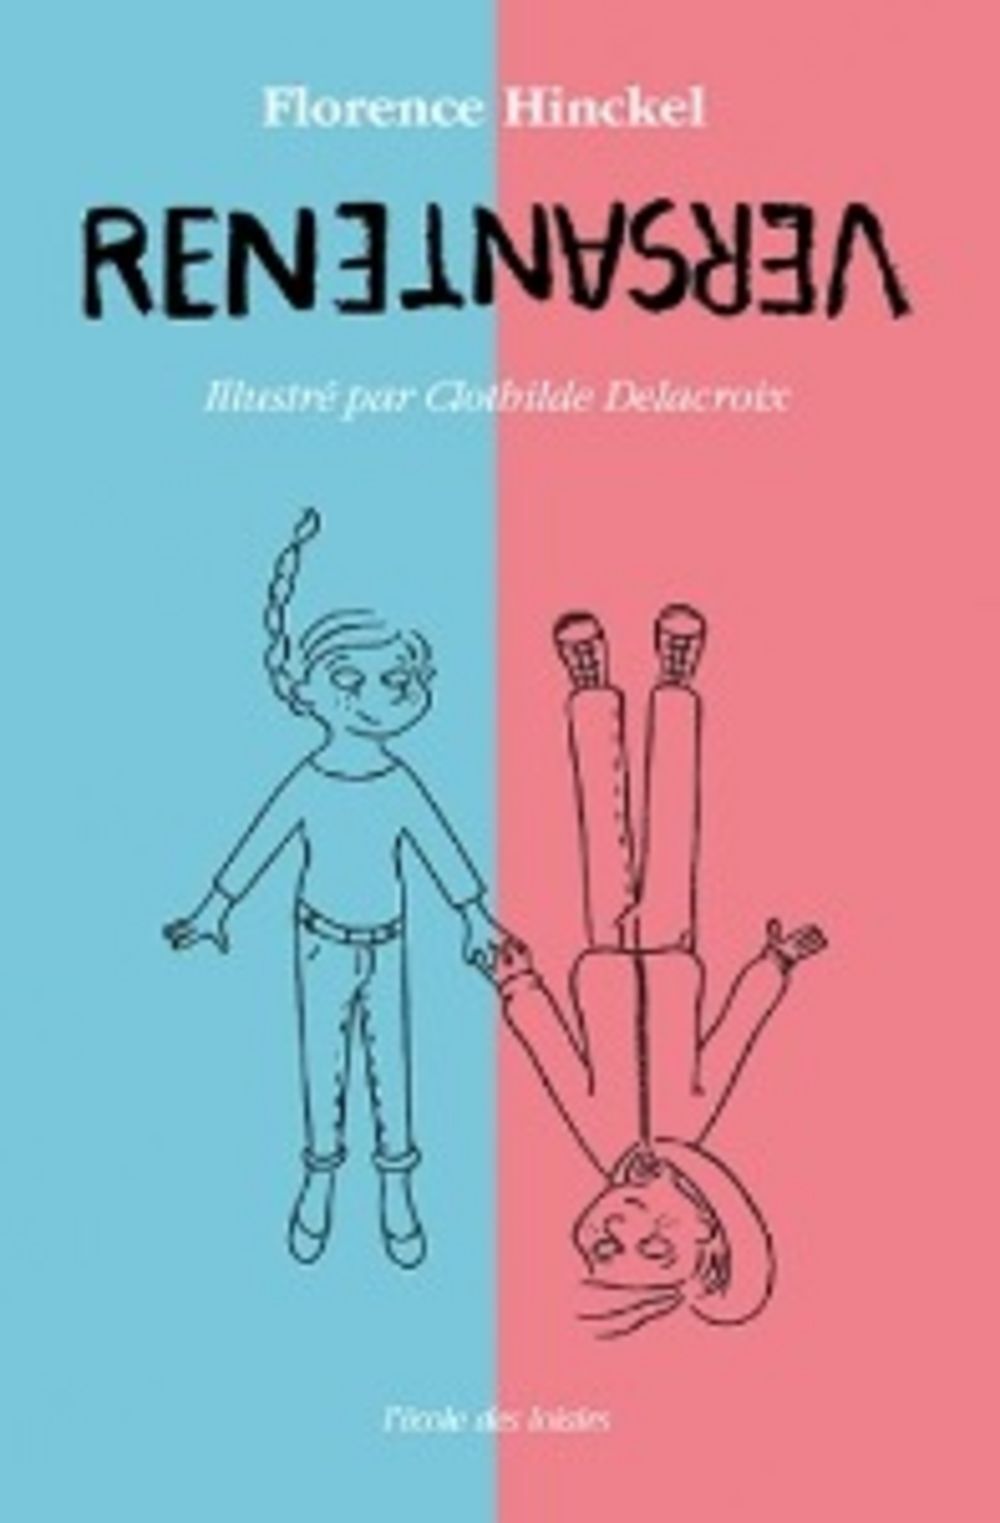 Couverture du livre Renversante avec un adolescent et une adolescente, allongés tête bêche, se tenant par la main.